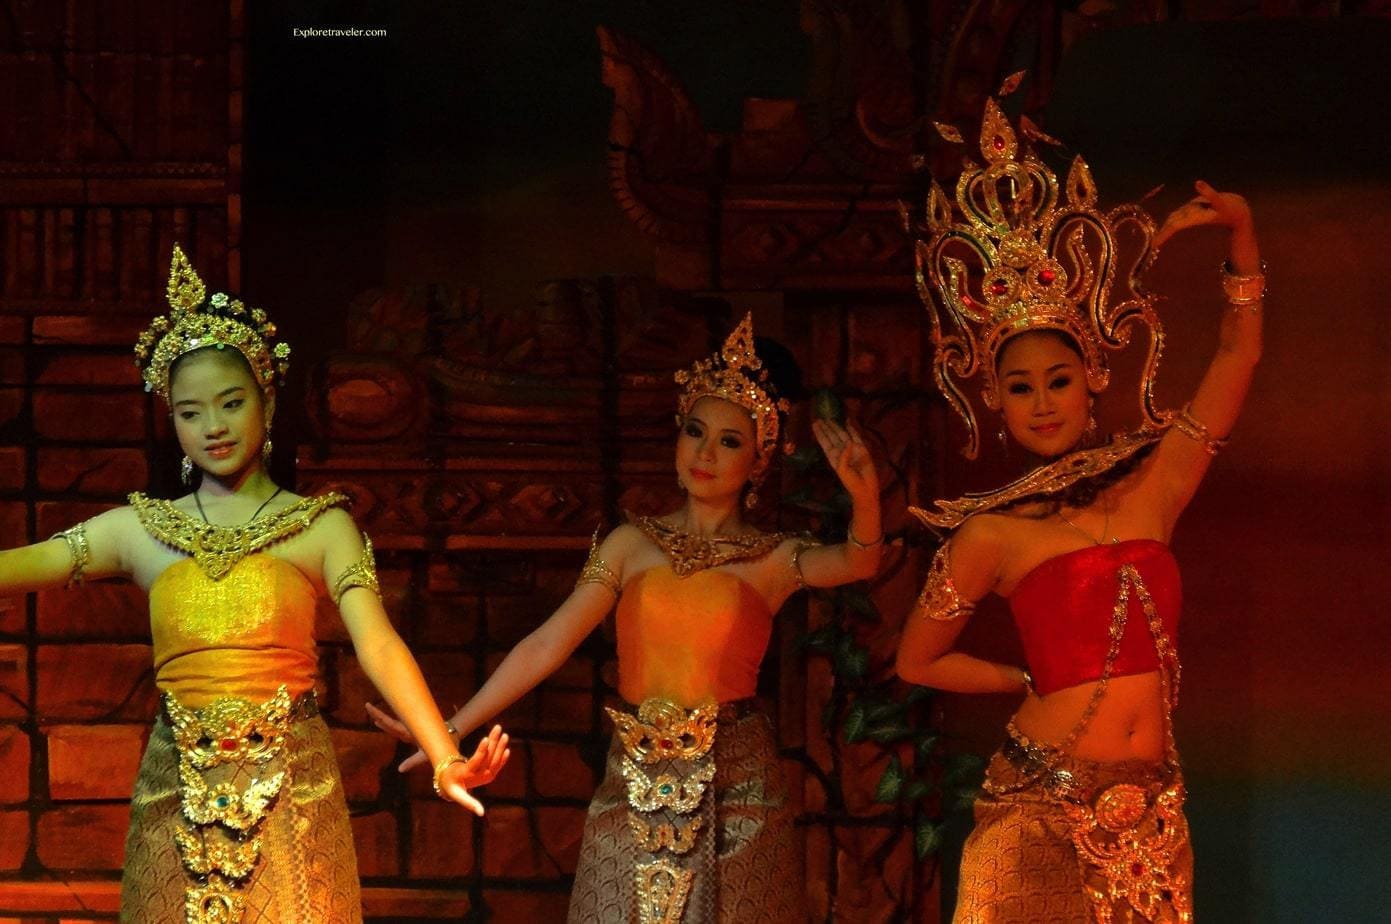 傳統的泰國舞蹈可以追溯到古代暹羅時代。